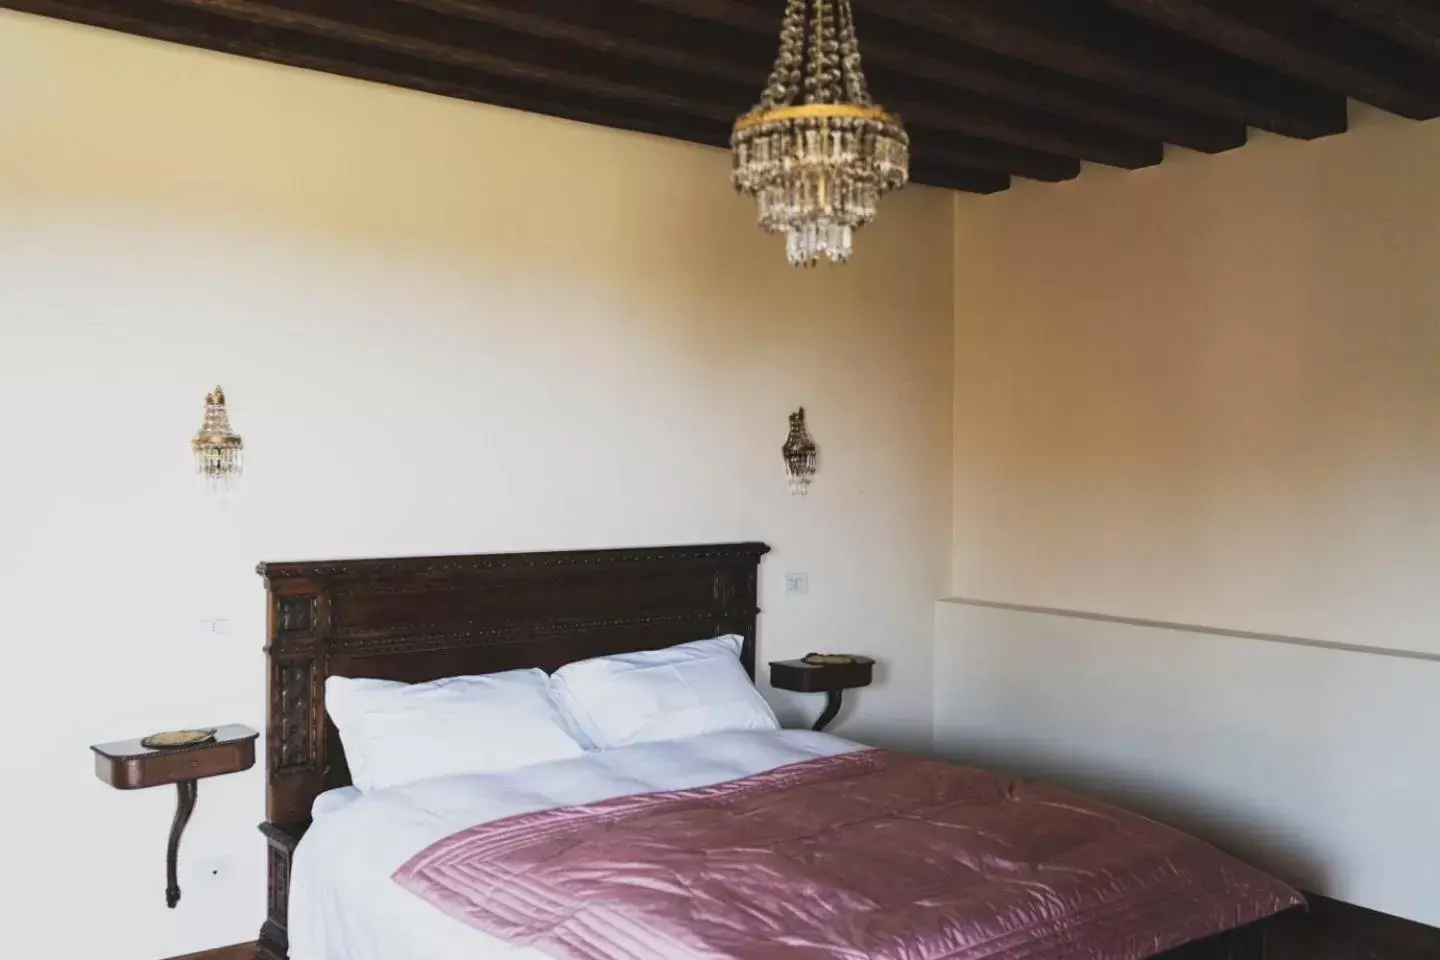 Bed in Villa Stecchini